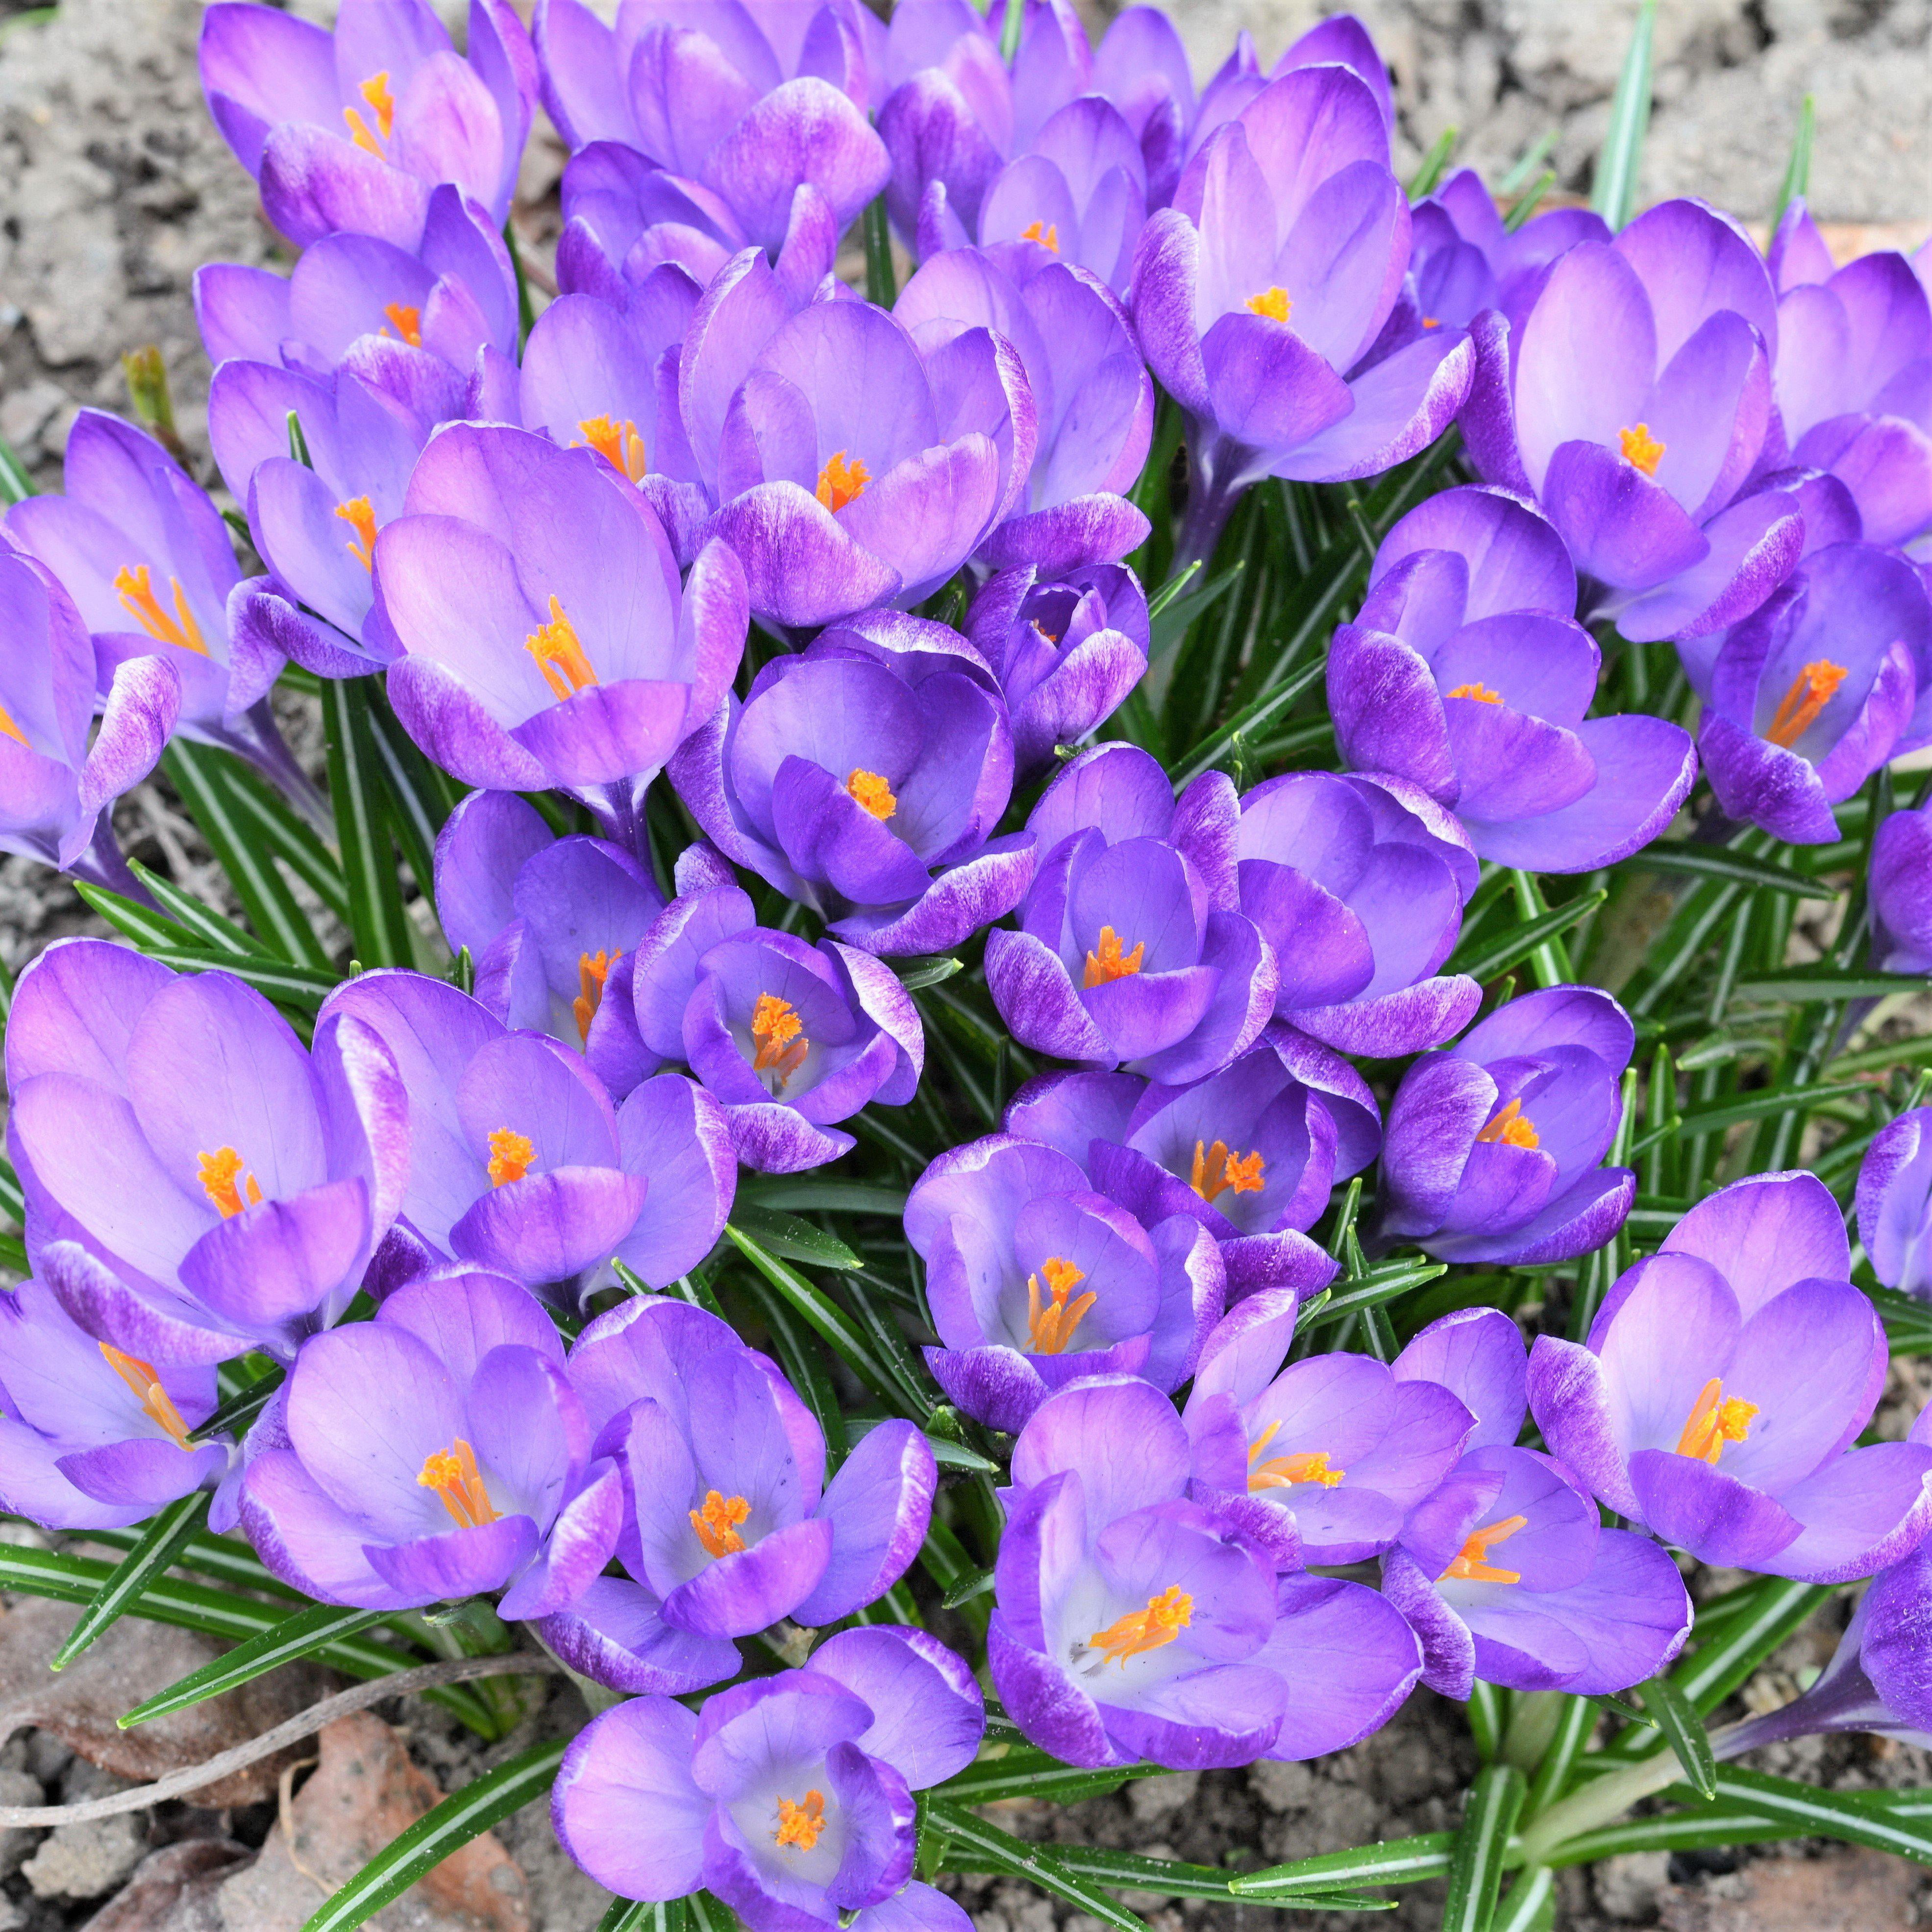 Saffron 30 PCS Seeds Crocus Flowers Herb Garden Useful Nature Perennial Plants I